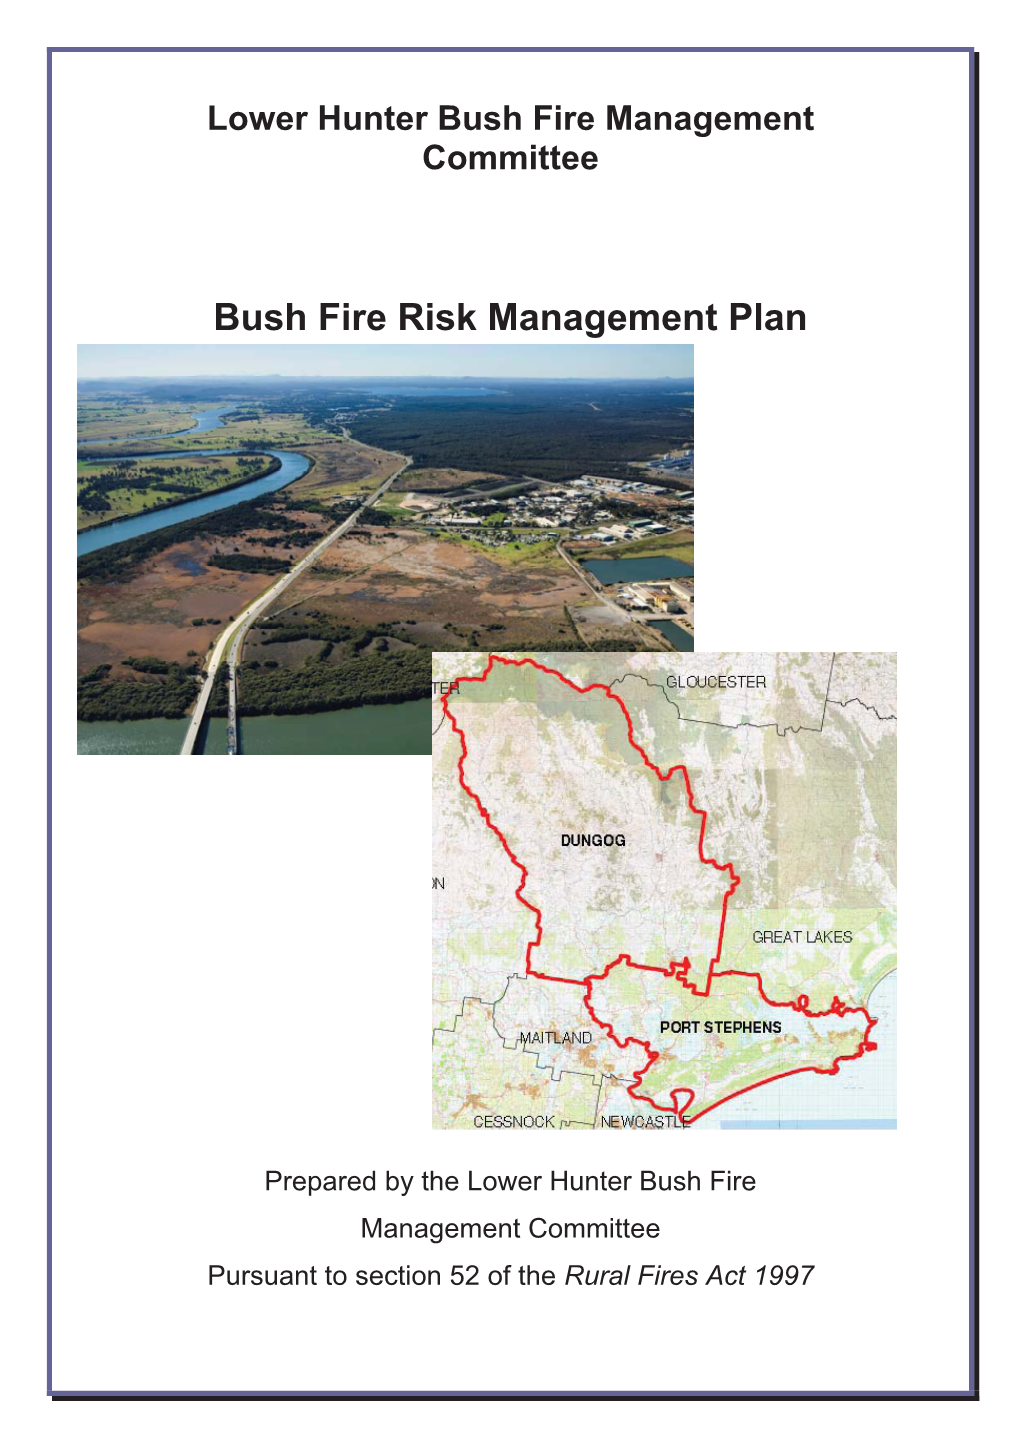 Bush Fire Risk Management Plan